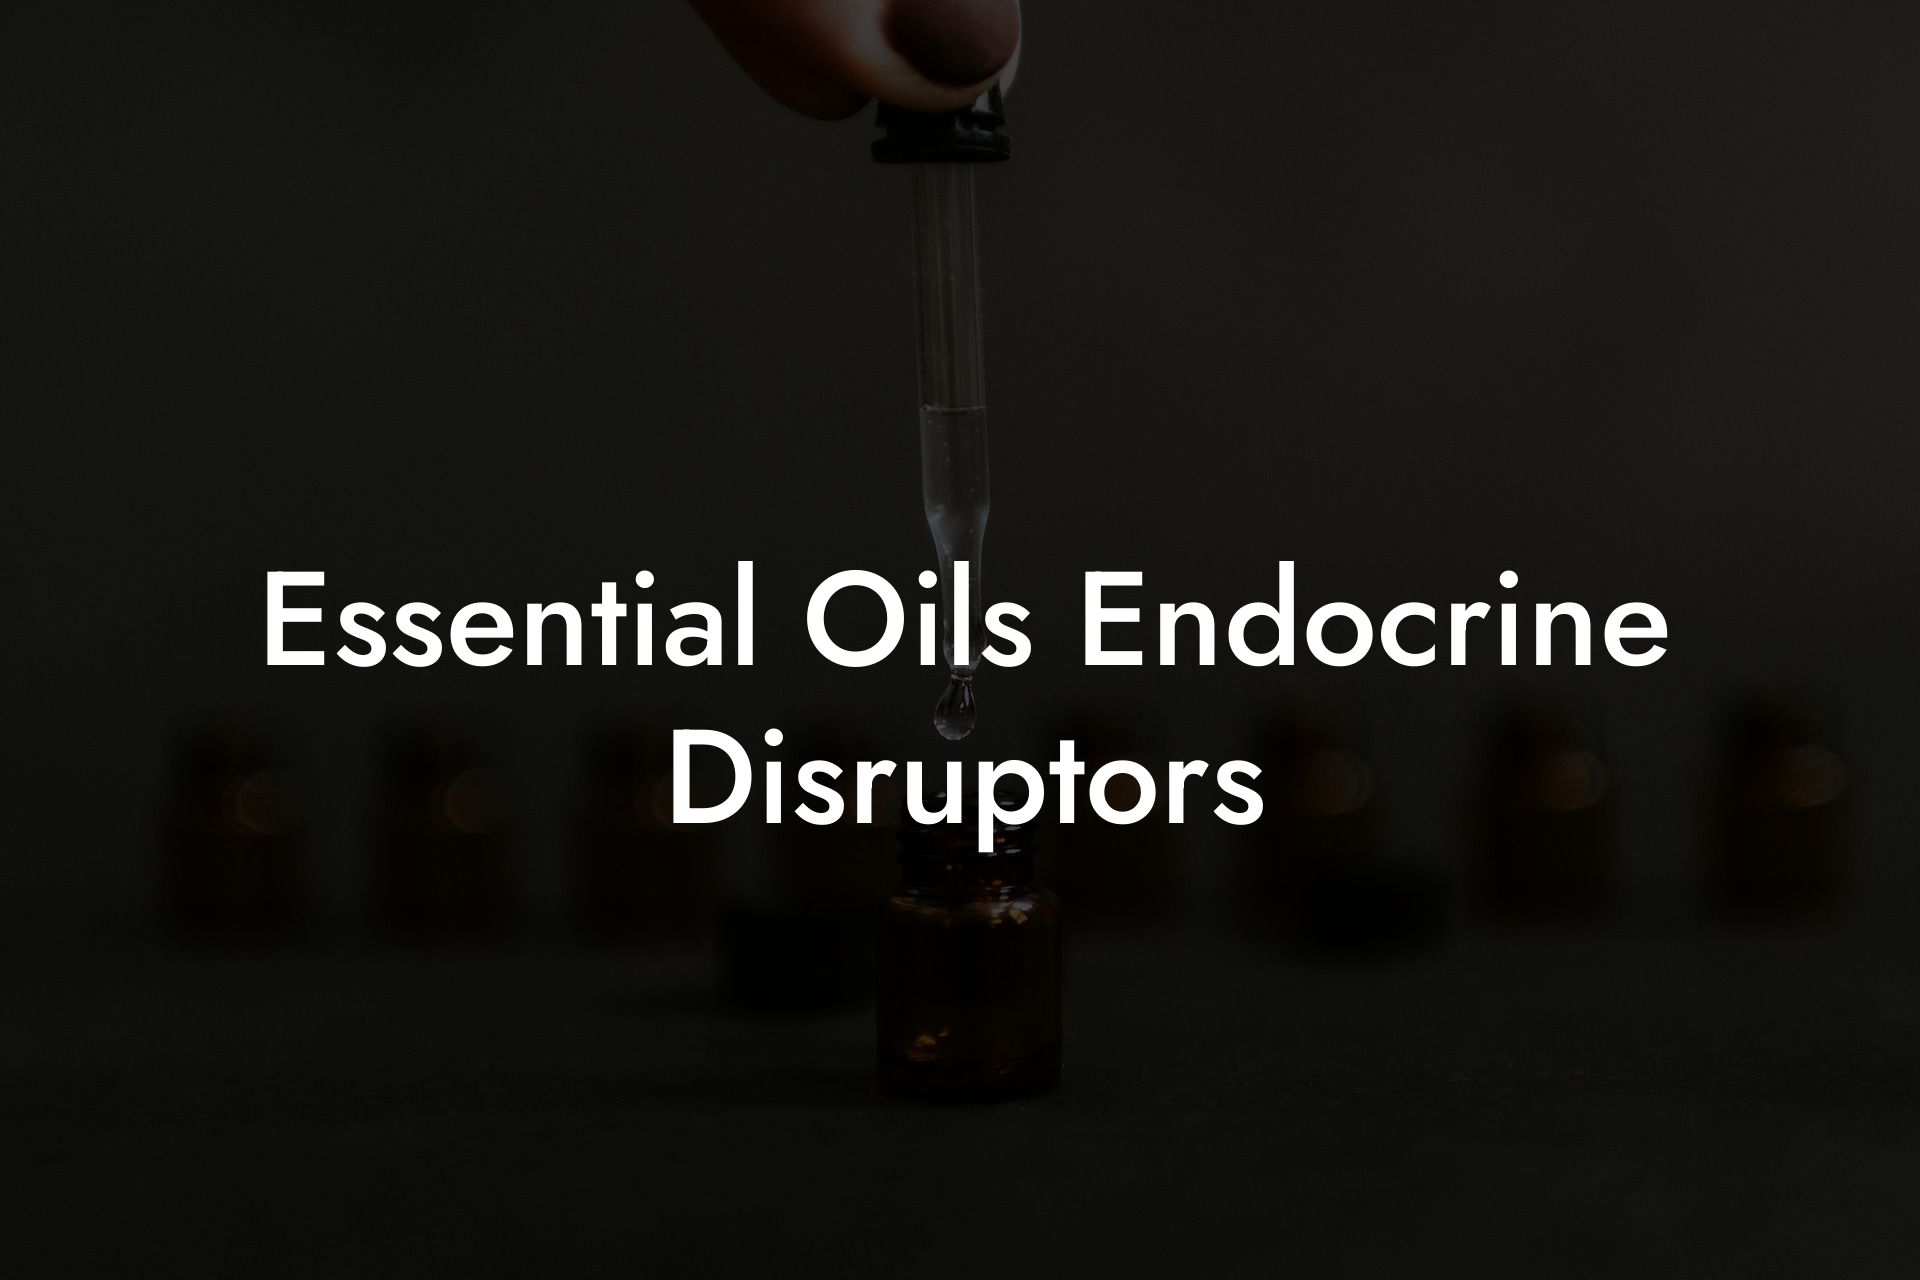 Essential Oils Endocrine Disruptors